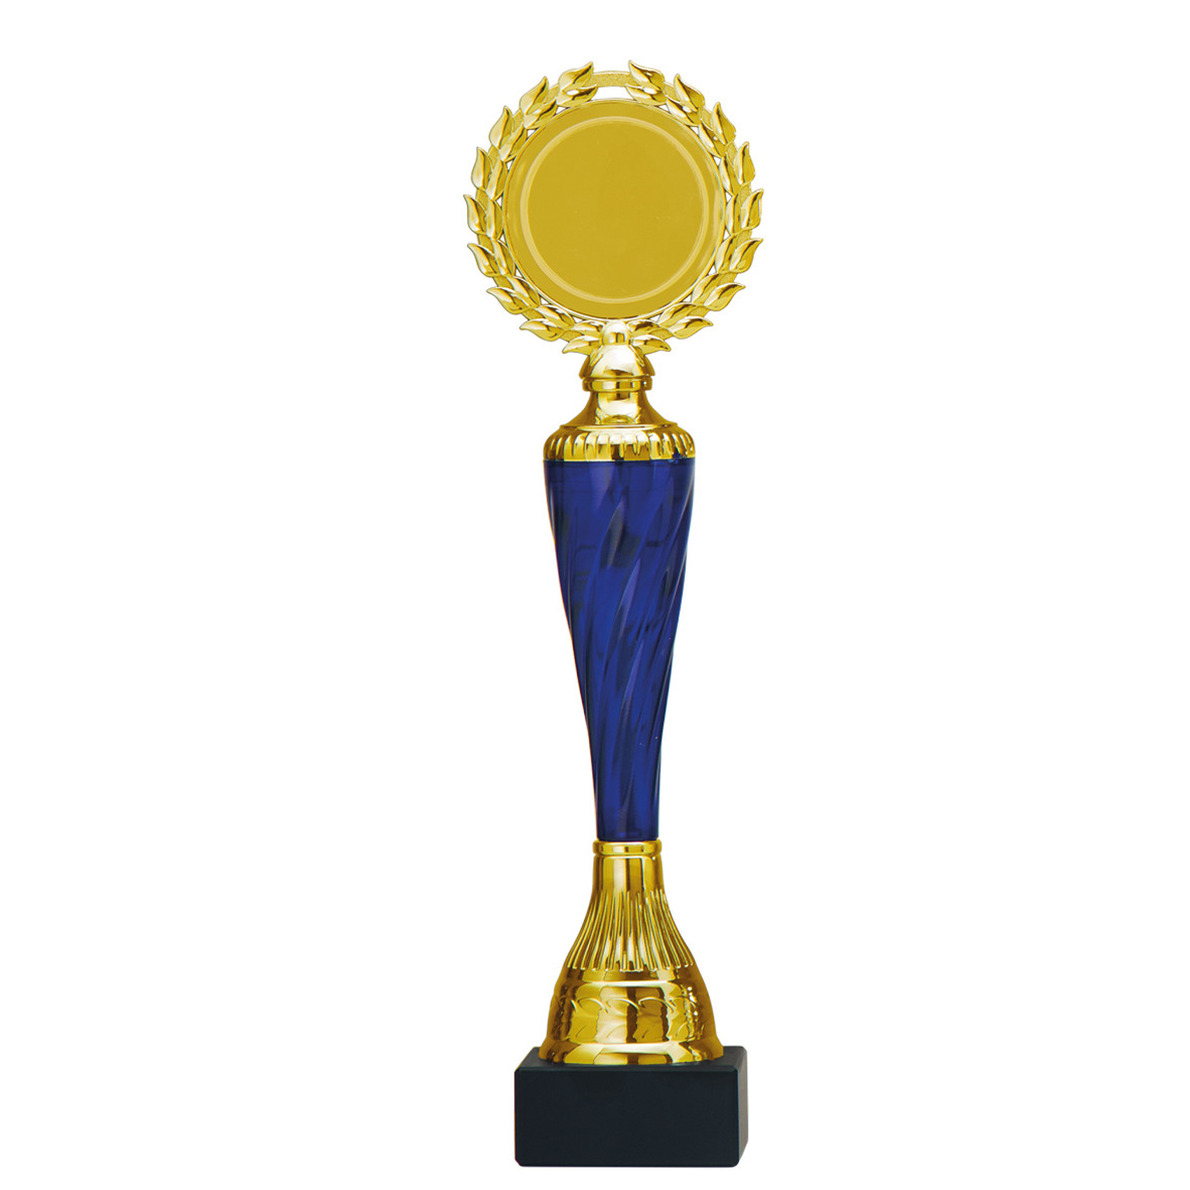 Luxe trofee-prijs goud-blauw middenstuk kunststof 32 x 8 cm